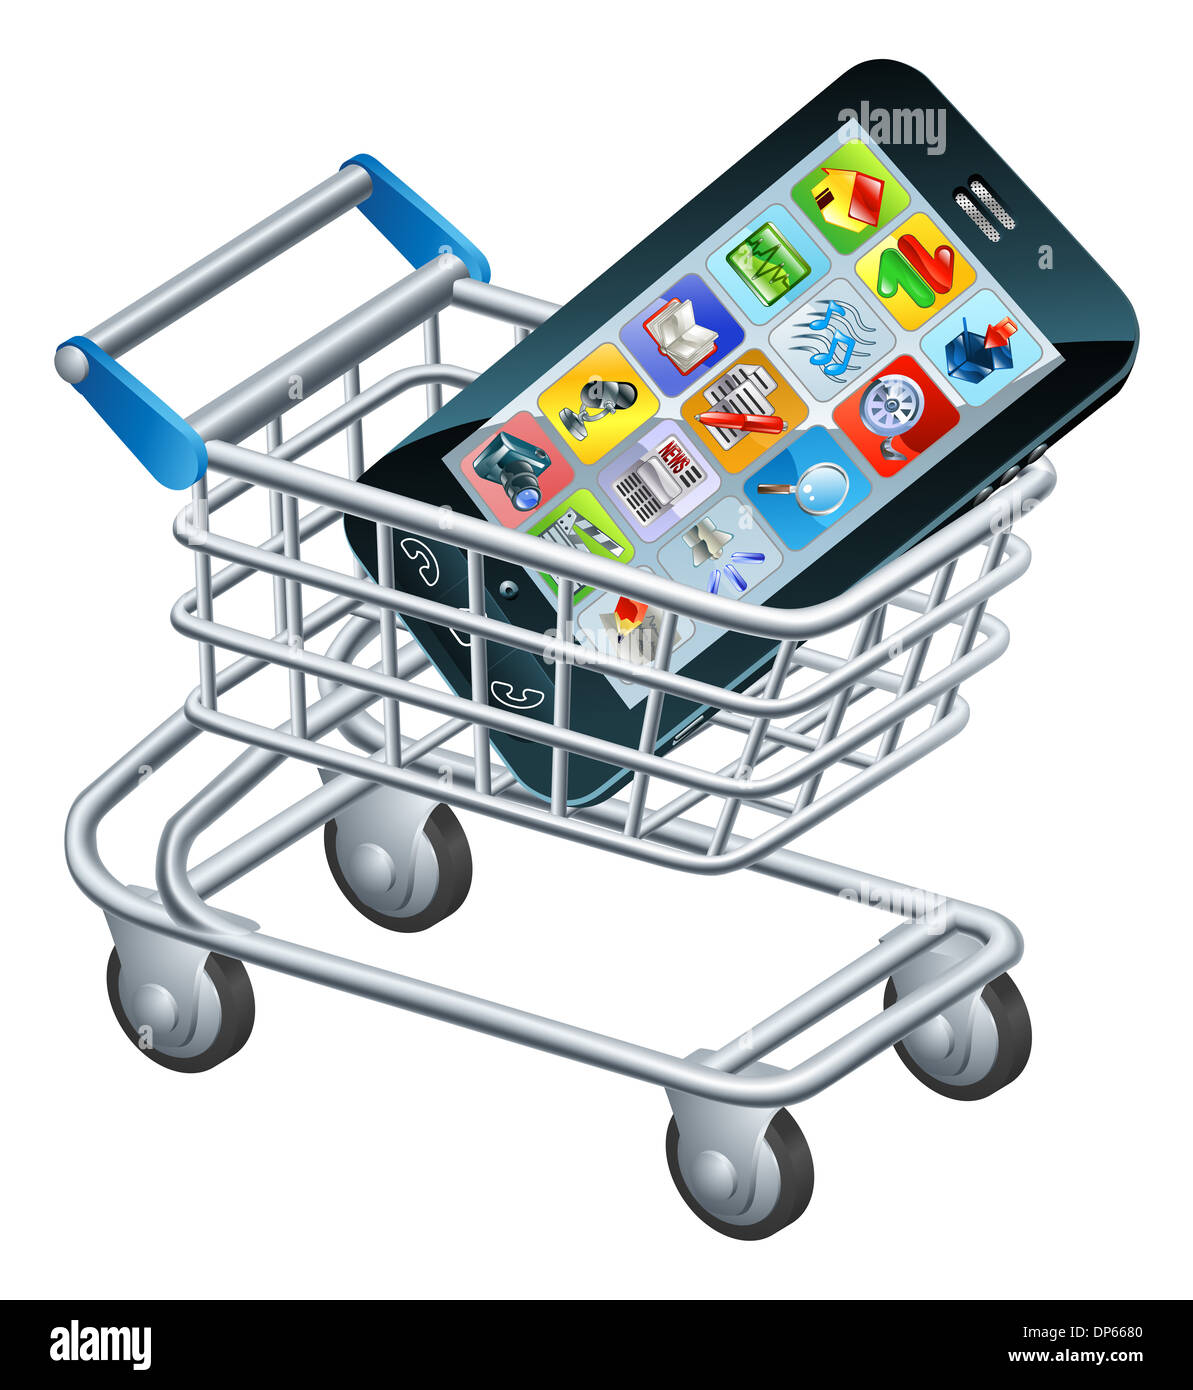 Teléfono móvil de compras, un concepto para comprar aplicaciones o un nuevo teléfono móvil Foto de stock